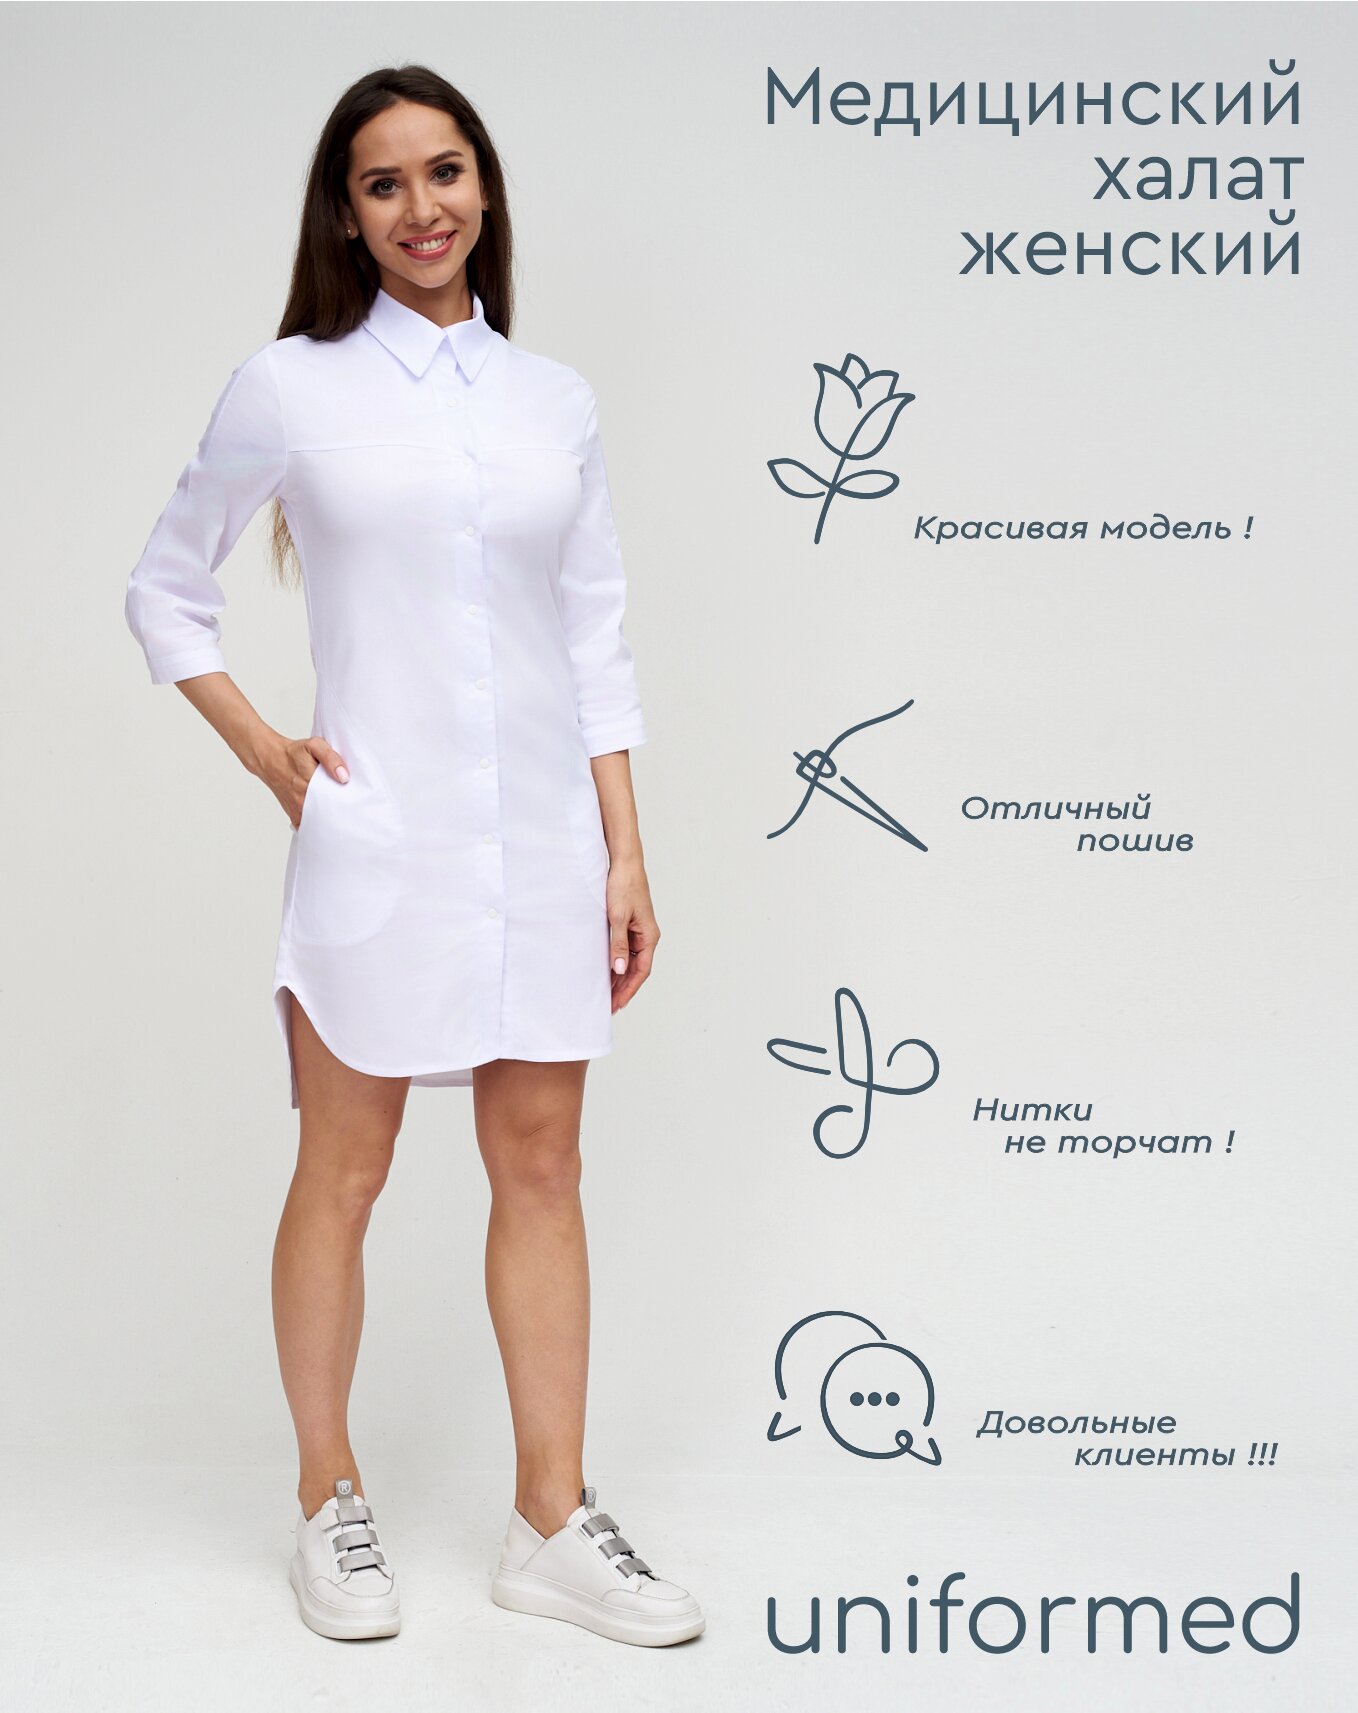 Медицинский женский халат 370.4.1 Uniformed, ткань сатори стрейч, укороченный, рукав 3/4, на кнопках, цвет белый, рост 170-176, размер 56